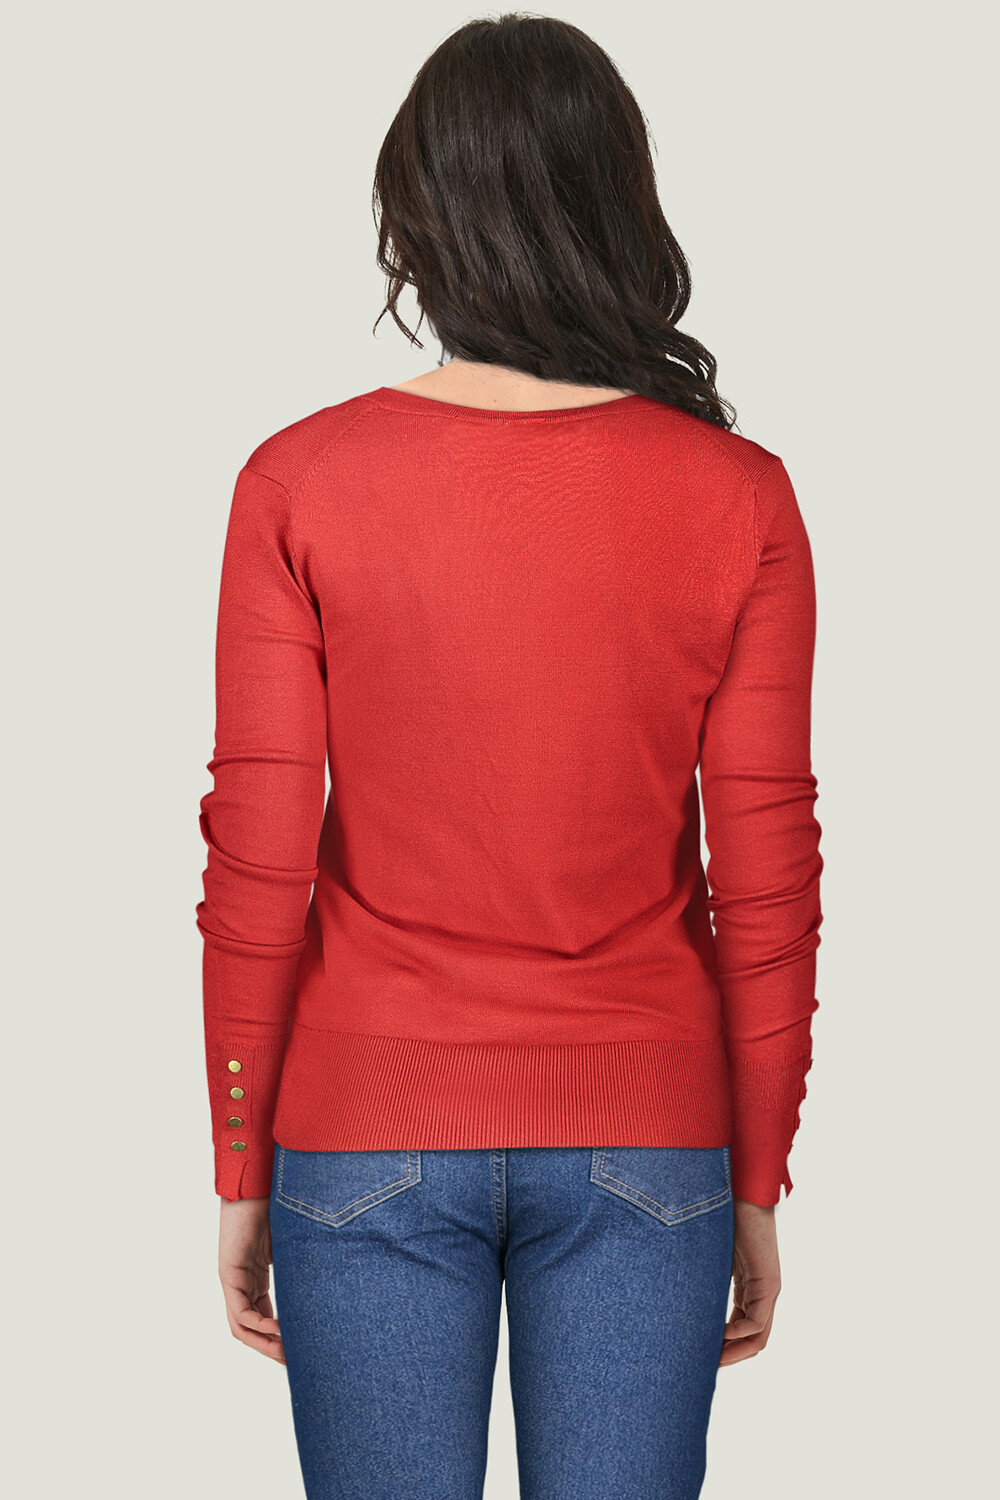 Sweater Irvine Rojo